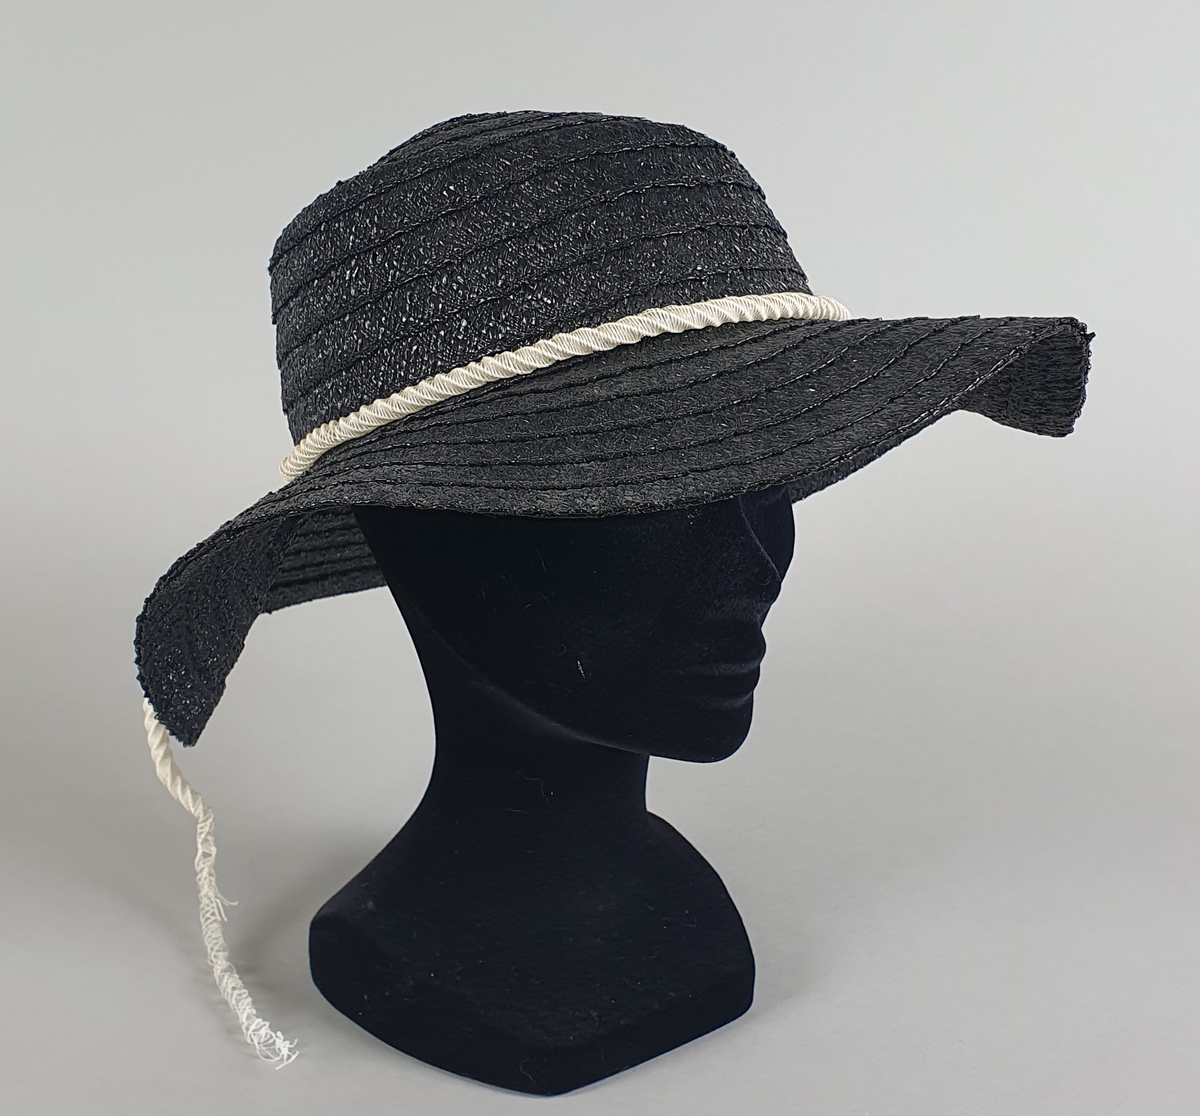 Mørkeblå (svart) hatt av plast, med hvitt plastbånd rundt pullen.